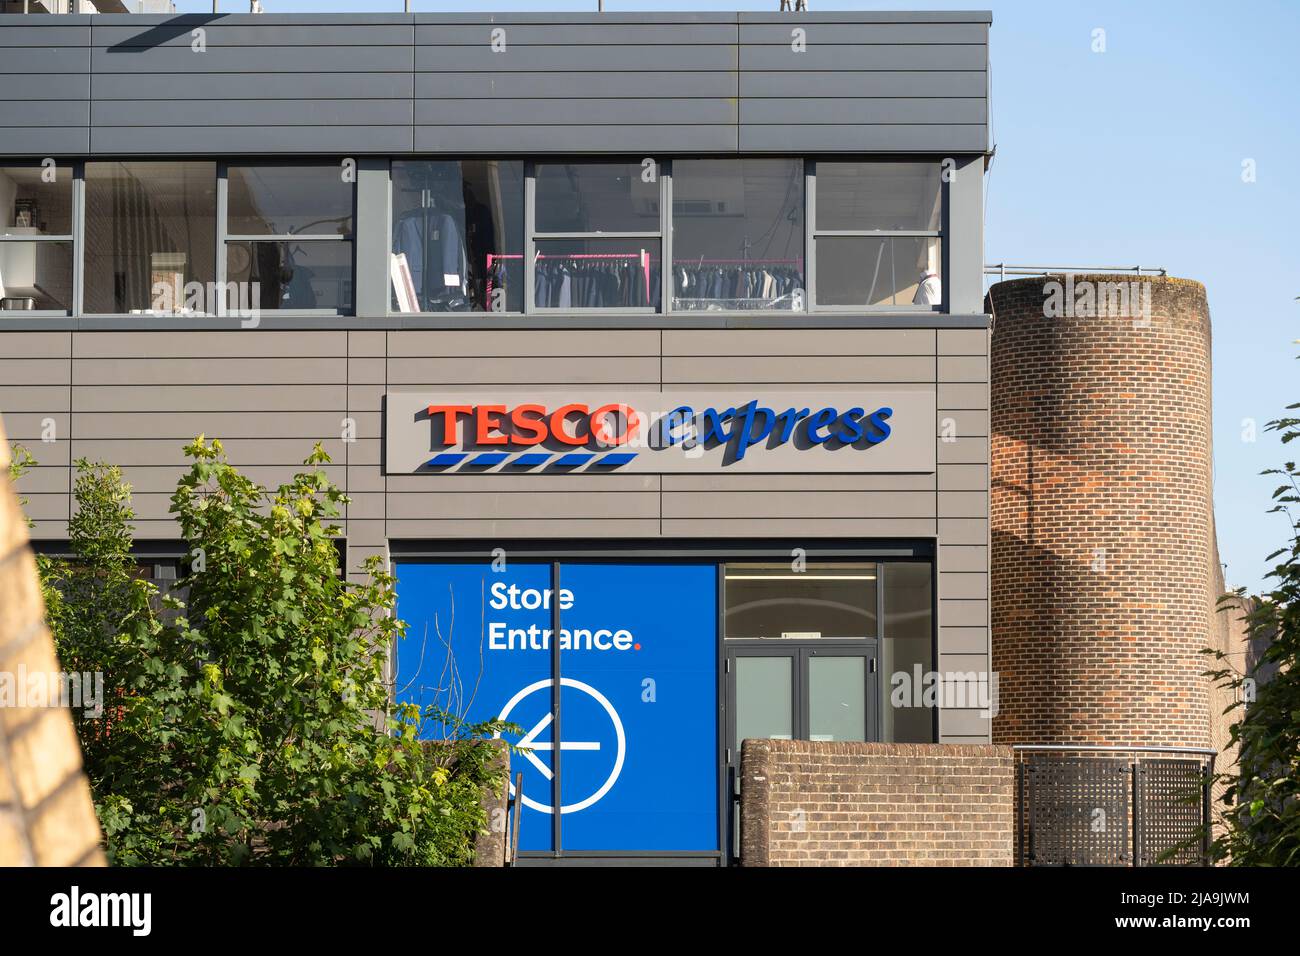 Tesco Express nel centro di Basingstoke, Inghilterra. Concetto - Gran supermercato britannico a quattro catene, minimarket, inflazione alimentare, aumento dei prezzi dei prodotti alimentari Foto Stock